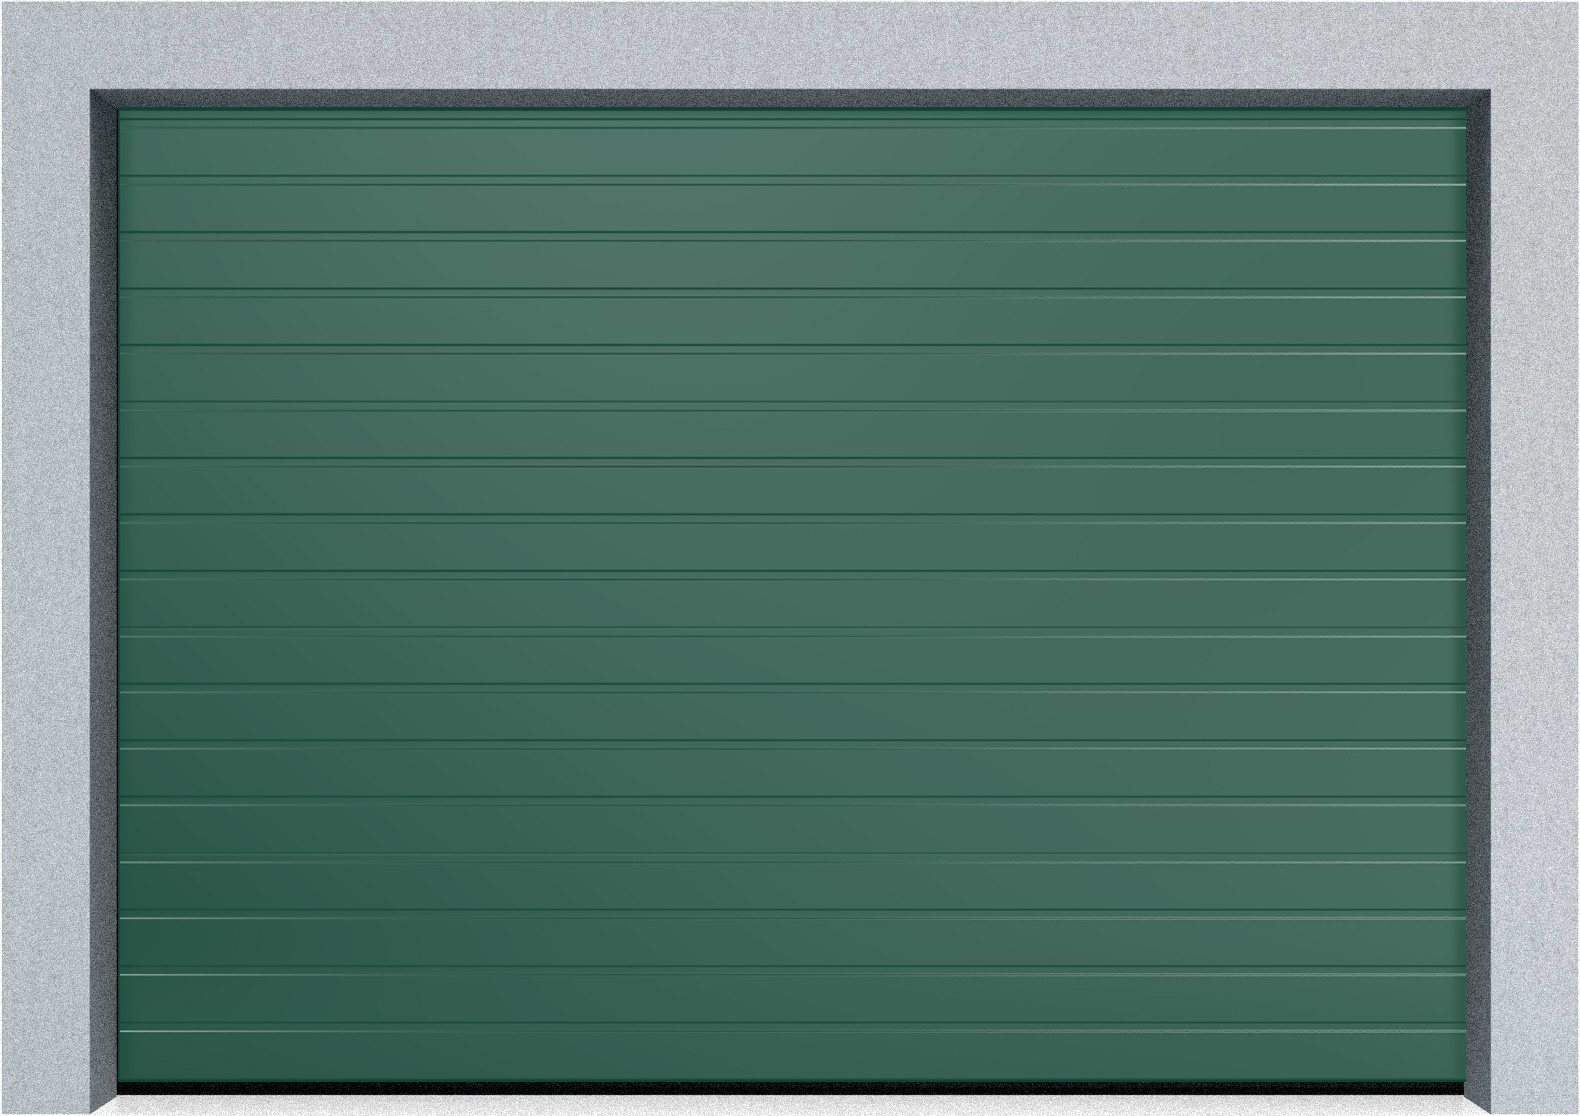  Автоматические Секционные гаражные ворота Hormann LTE 42 5000х2250 S-гофр, Микроволна стандартные цвета, фото 3 